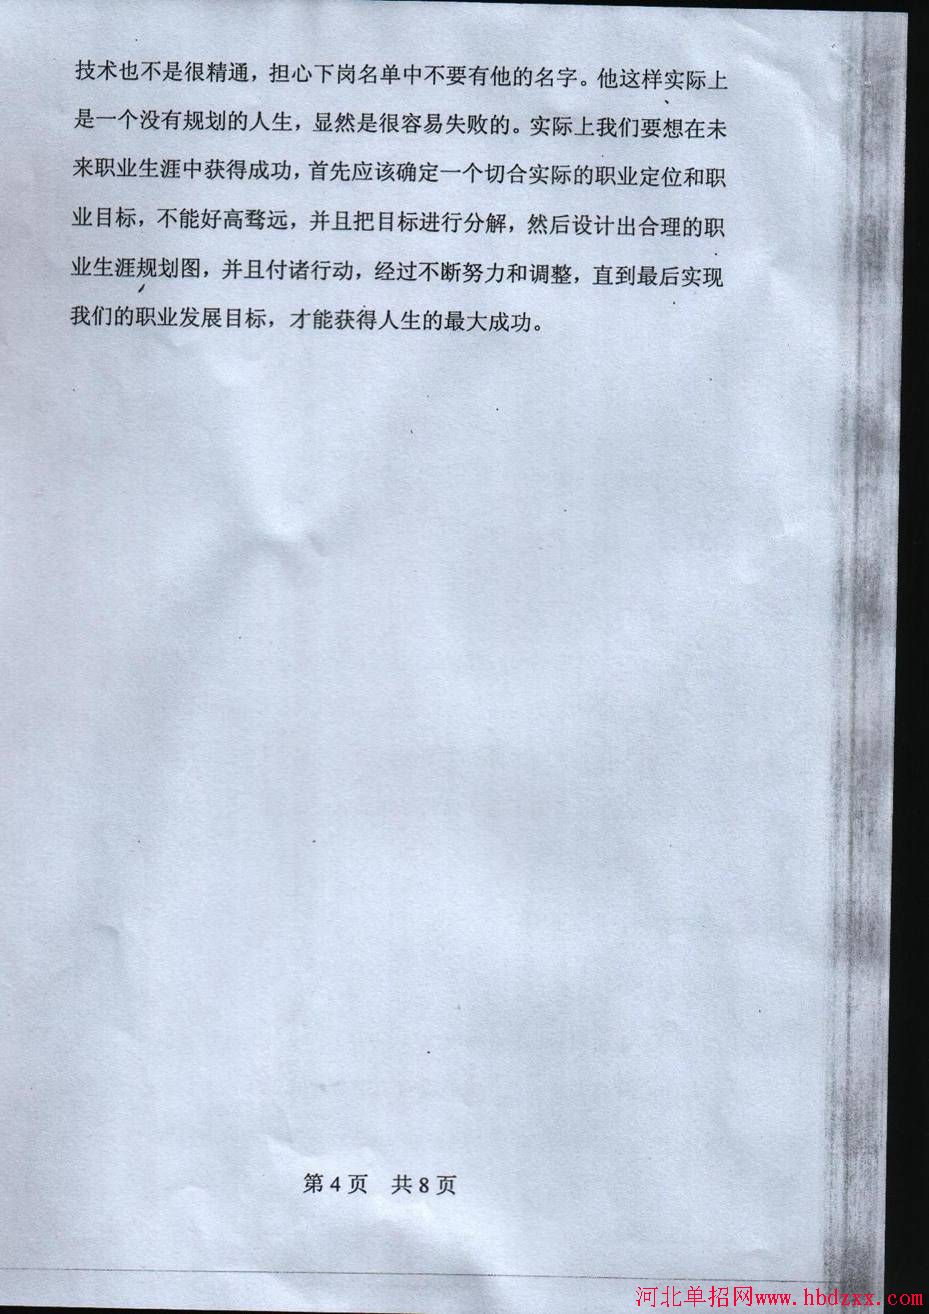 2014年河北省部分公办高职院校单独招生统一考试试卷及答案 图1